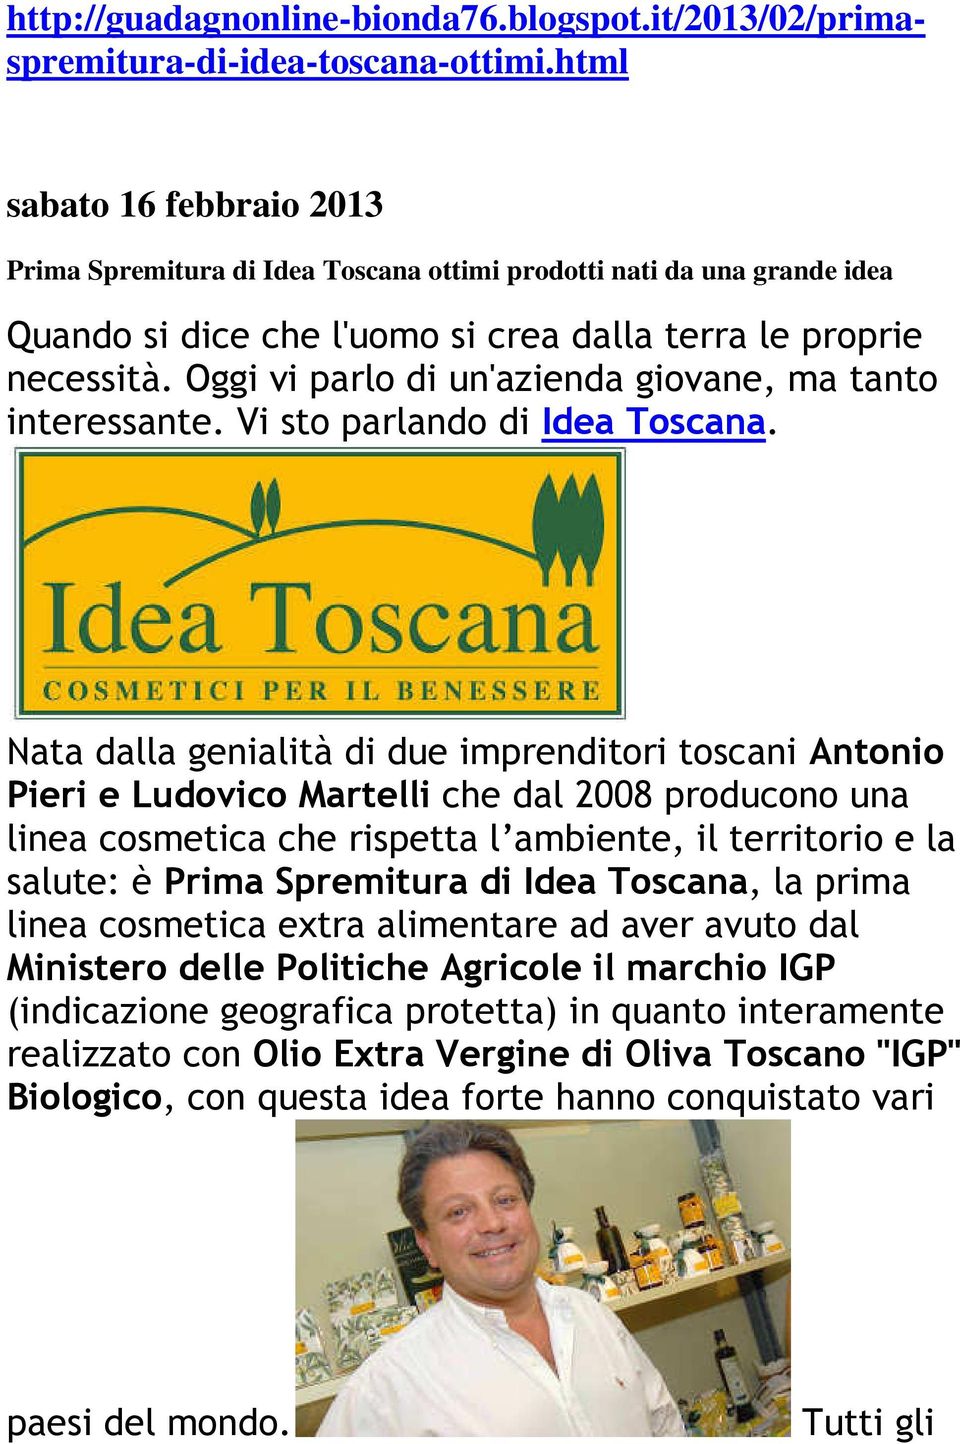 Oggi vi parlo di un'azienda giovane, ma tanto interessante. Vi sto parlando di Idea Toscana.